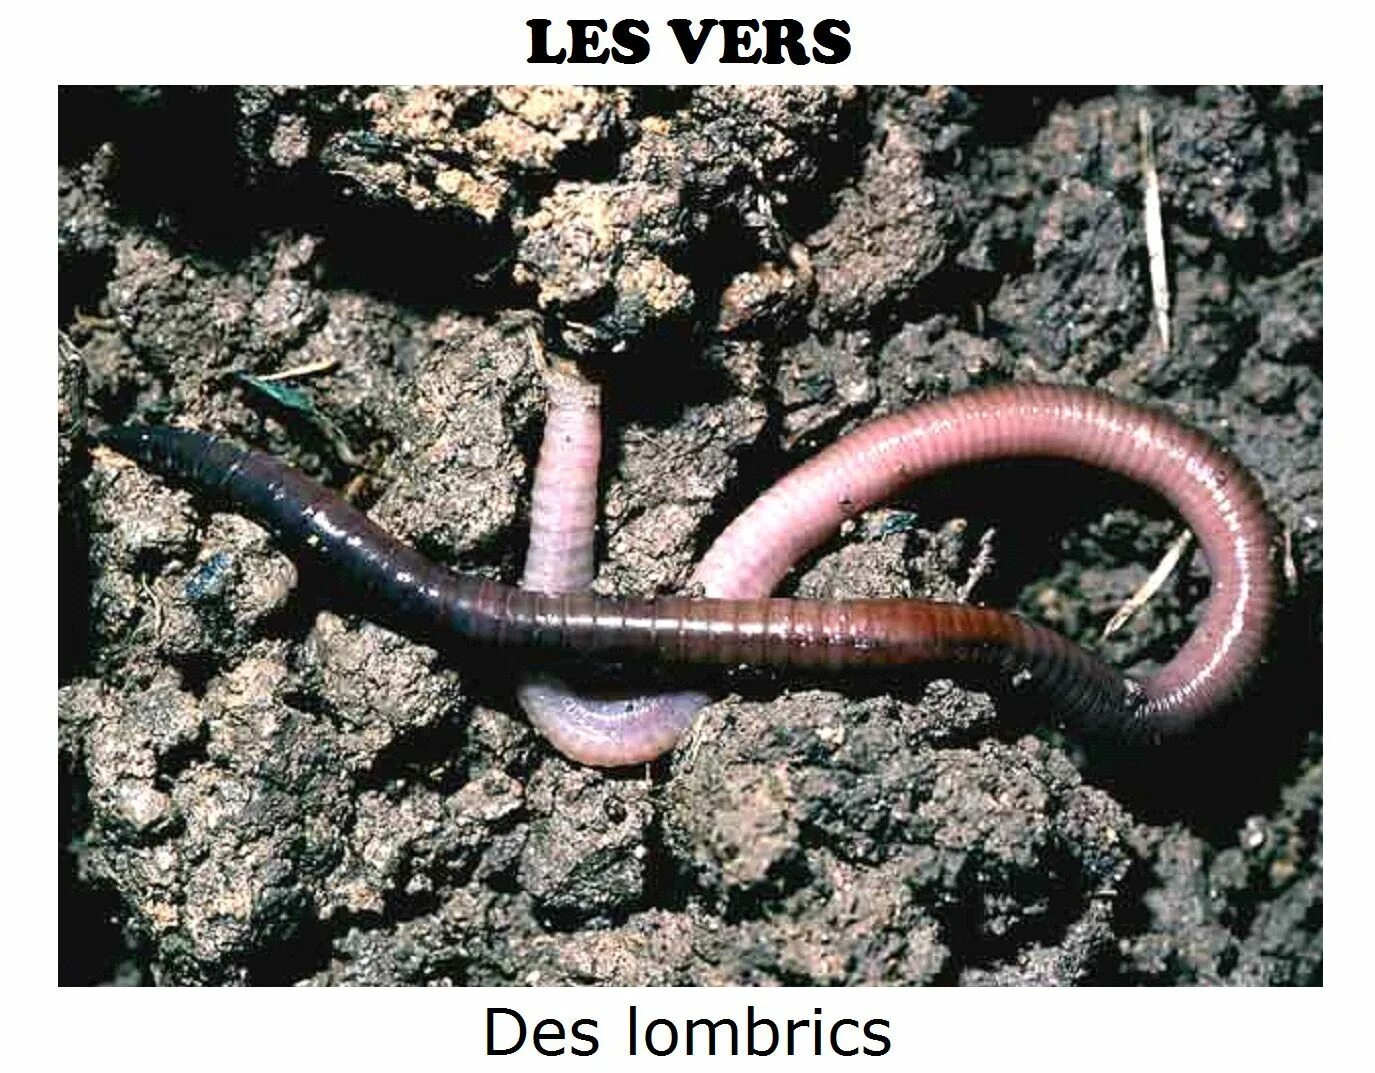 Дождевой червь относится к насекомым. Малощетинковые дождевой червь. Червь Земляной (Lumbricus terrestris). Кольчатые черви олигохеты. Дождевые черви среда обитания.